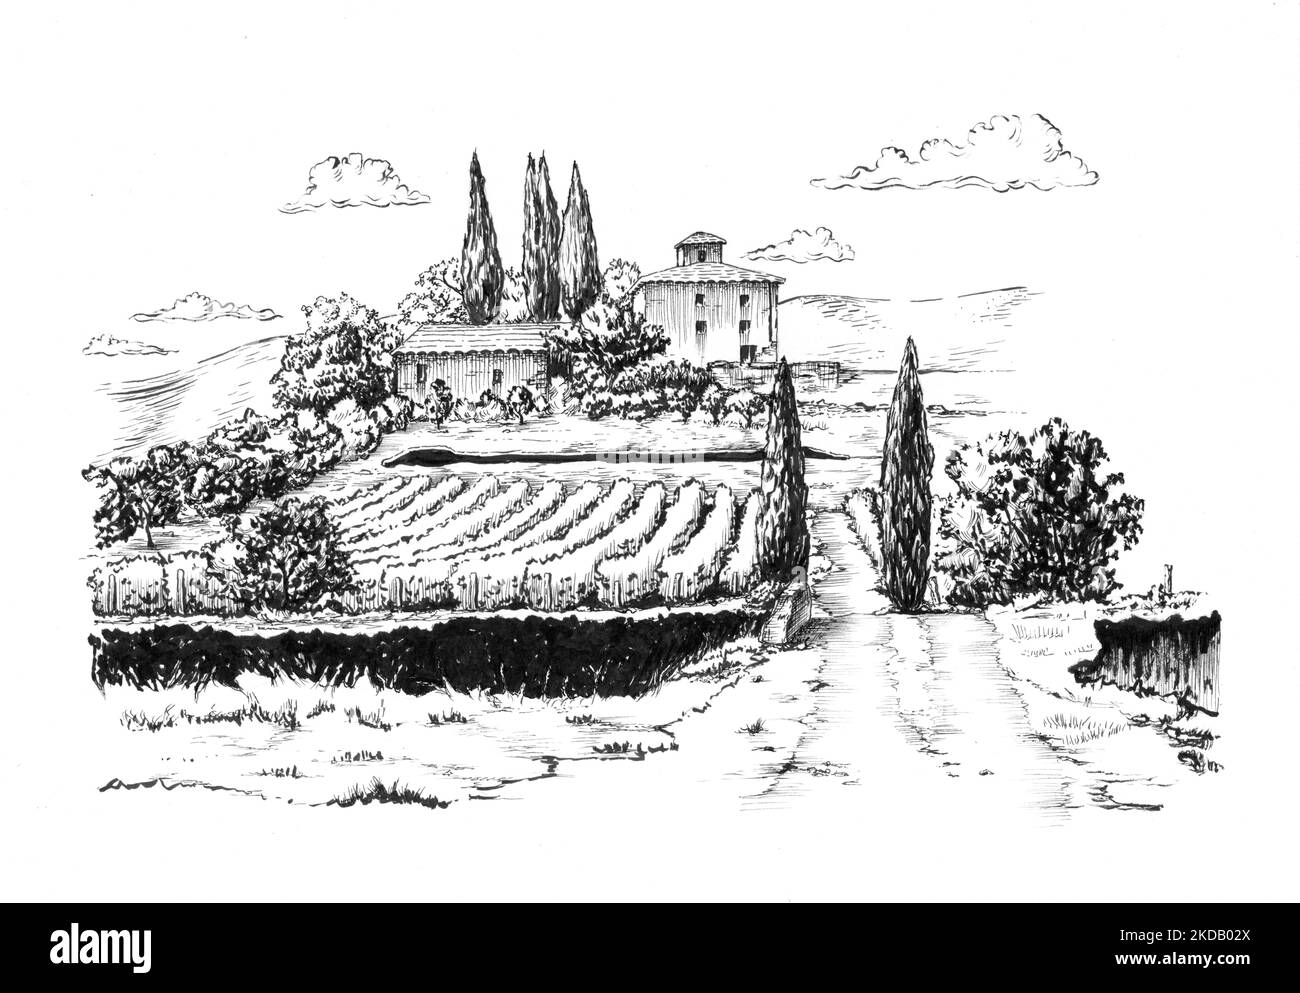 Tuschezeichnung einer ländlichen Landschaft mit einem Weinberg. Traditionelle Illustration auf Papier. Stockfoto